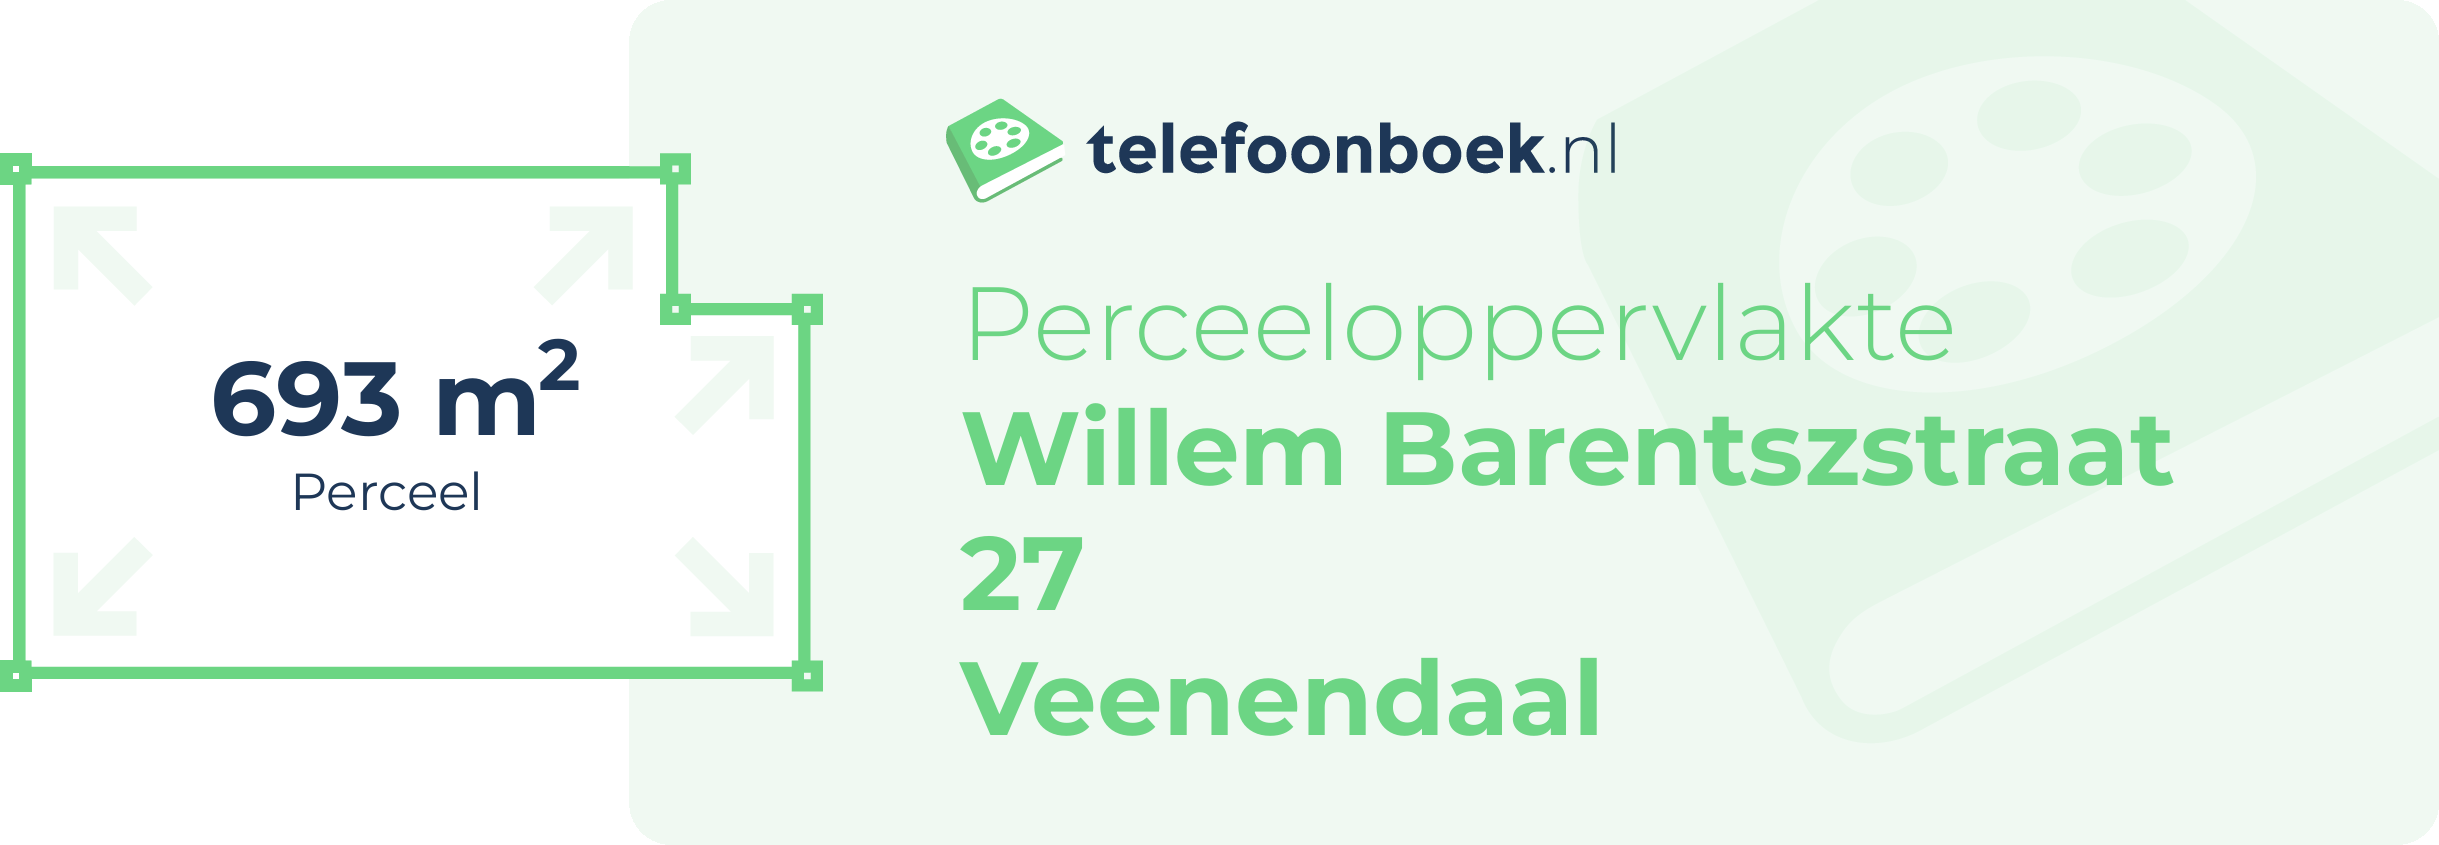 Perceeloppervlakte Willem Barentszstraat 27 Veenendaal